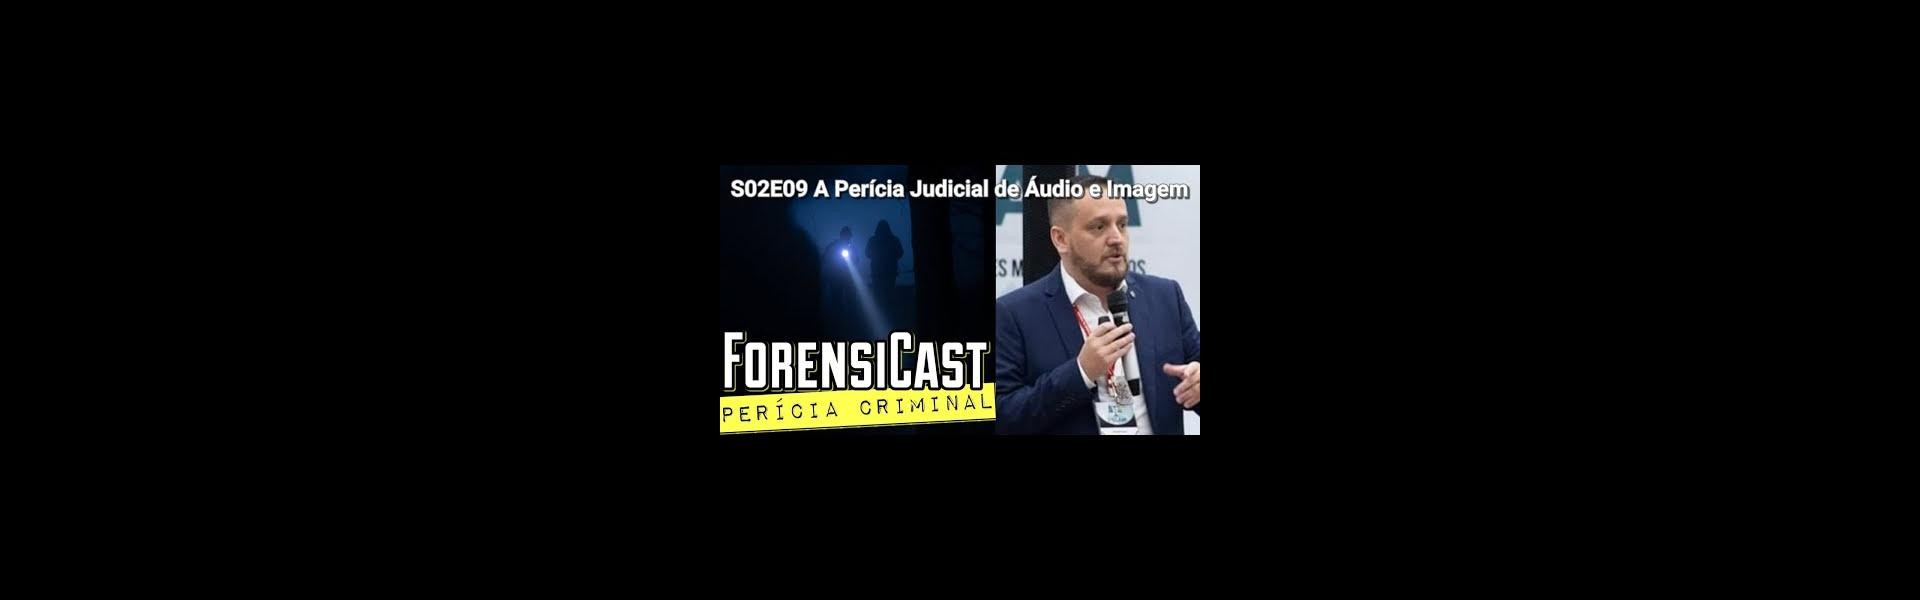 ForensiCast S02E09 A Pericia Judicial de Audio e Imagem Ricardo Caires dos Santos